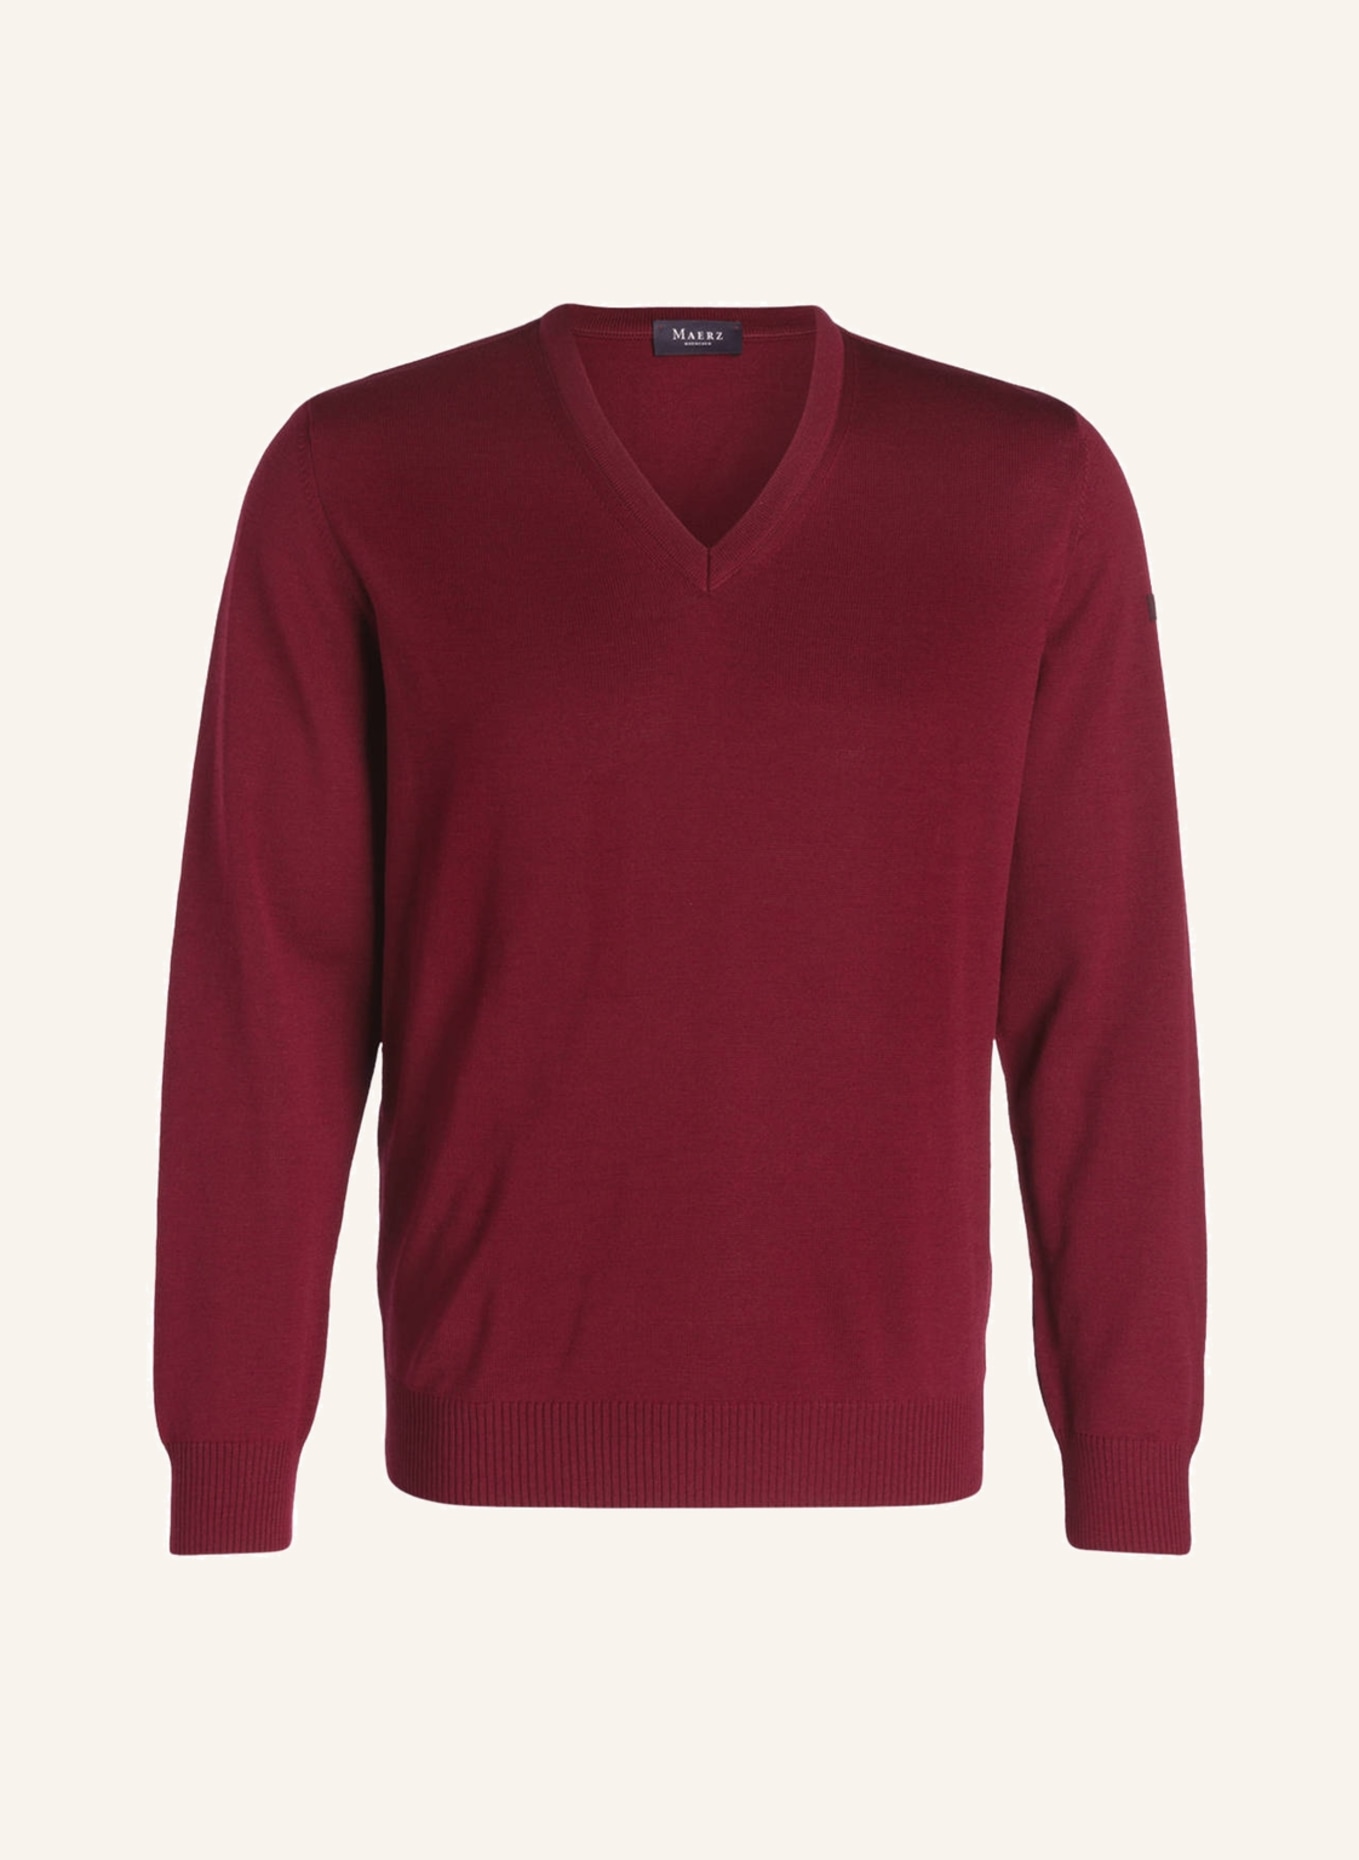 MAERZ MUENCHEN Pullover, Farbe: WEINROT (Bild 1)